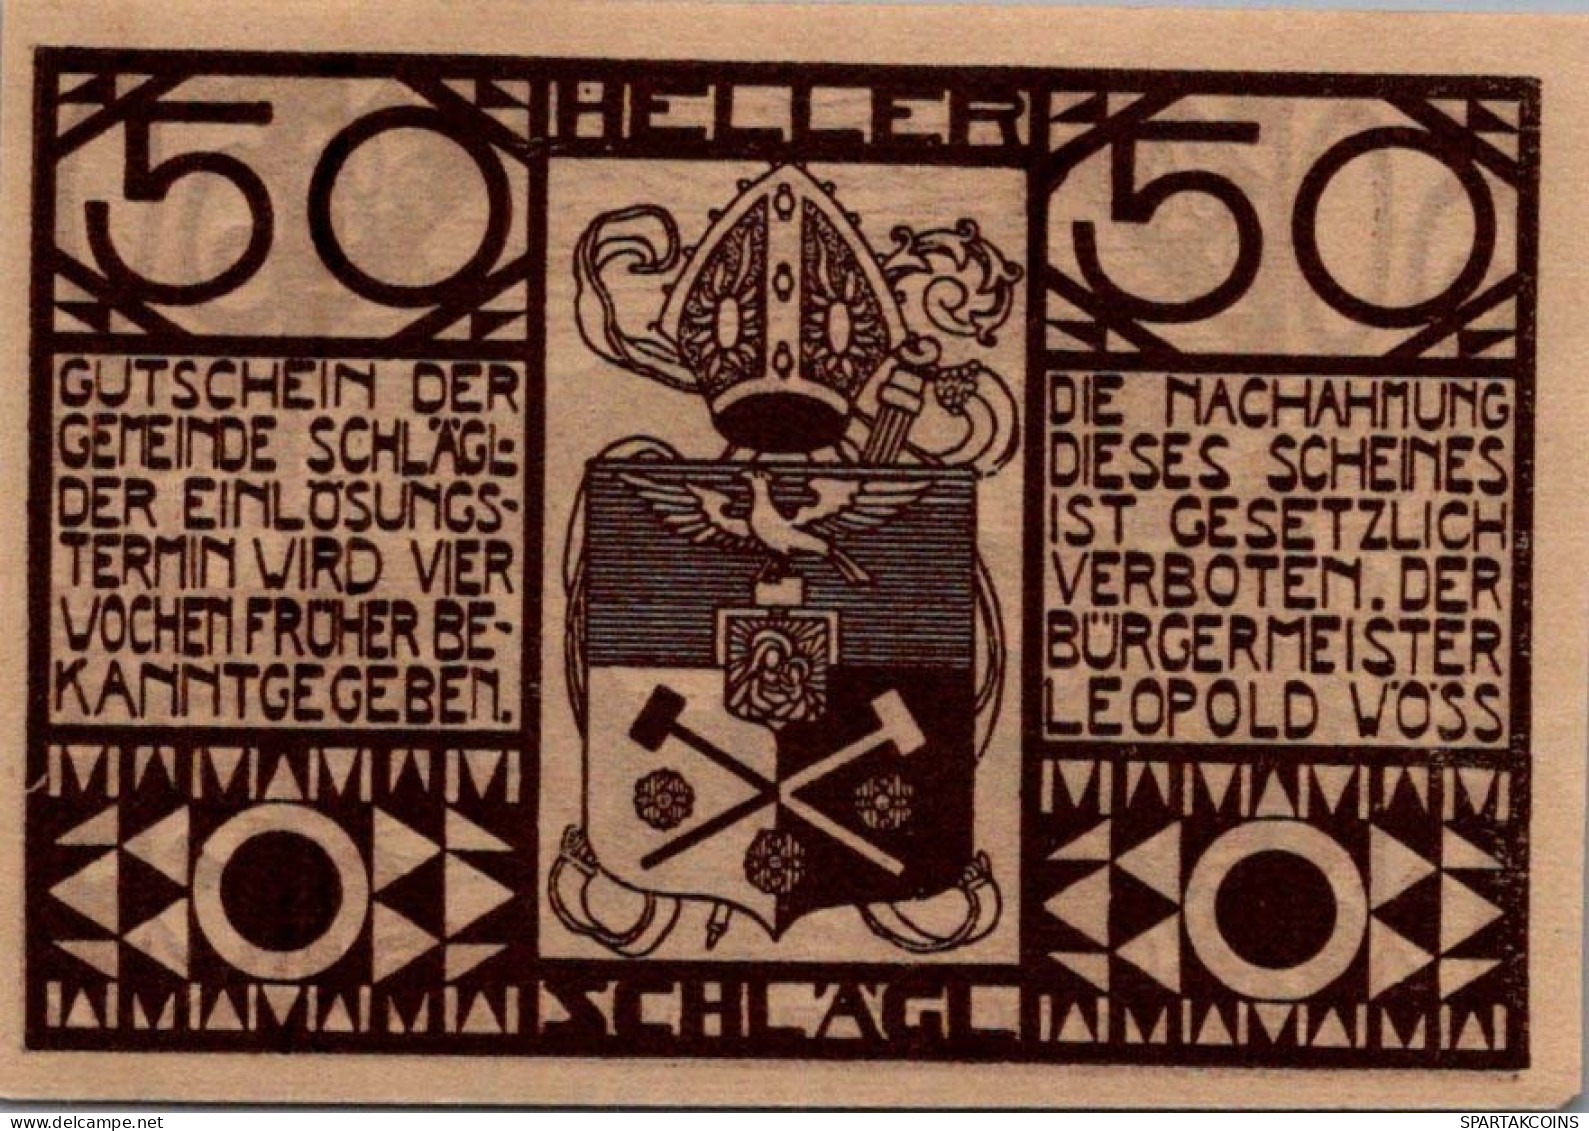 50 HELLER 1920 Stadt SCHLÄGL Oberösterreich Österreich UNC Österreich Notgeld #PH429 - [11] Local Banknote Issues